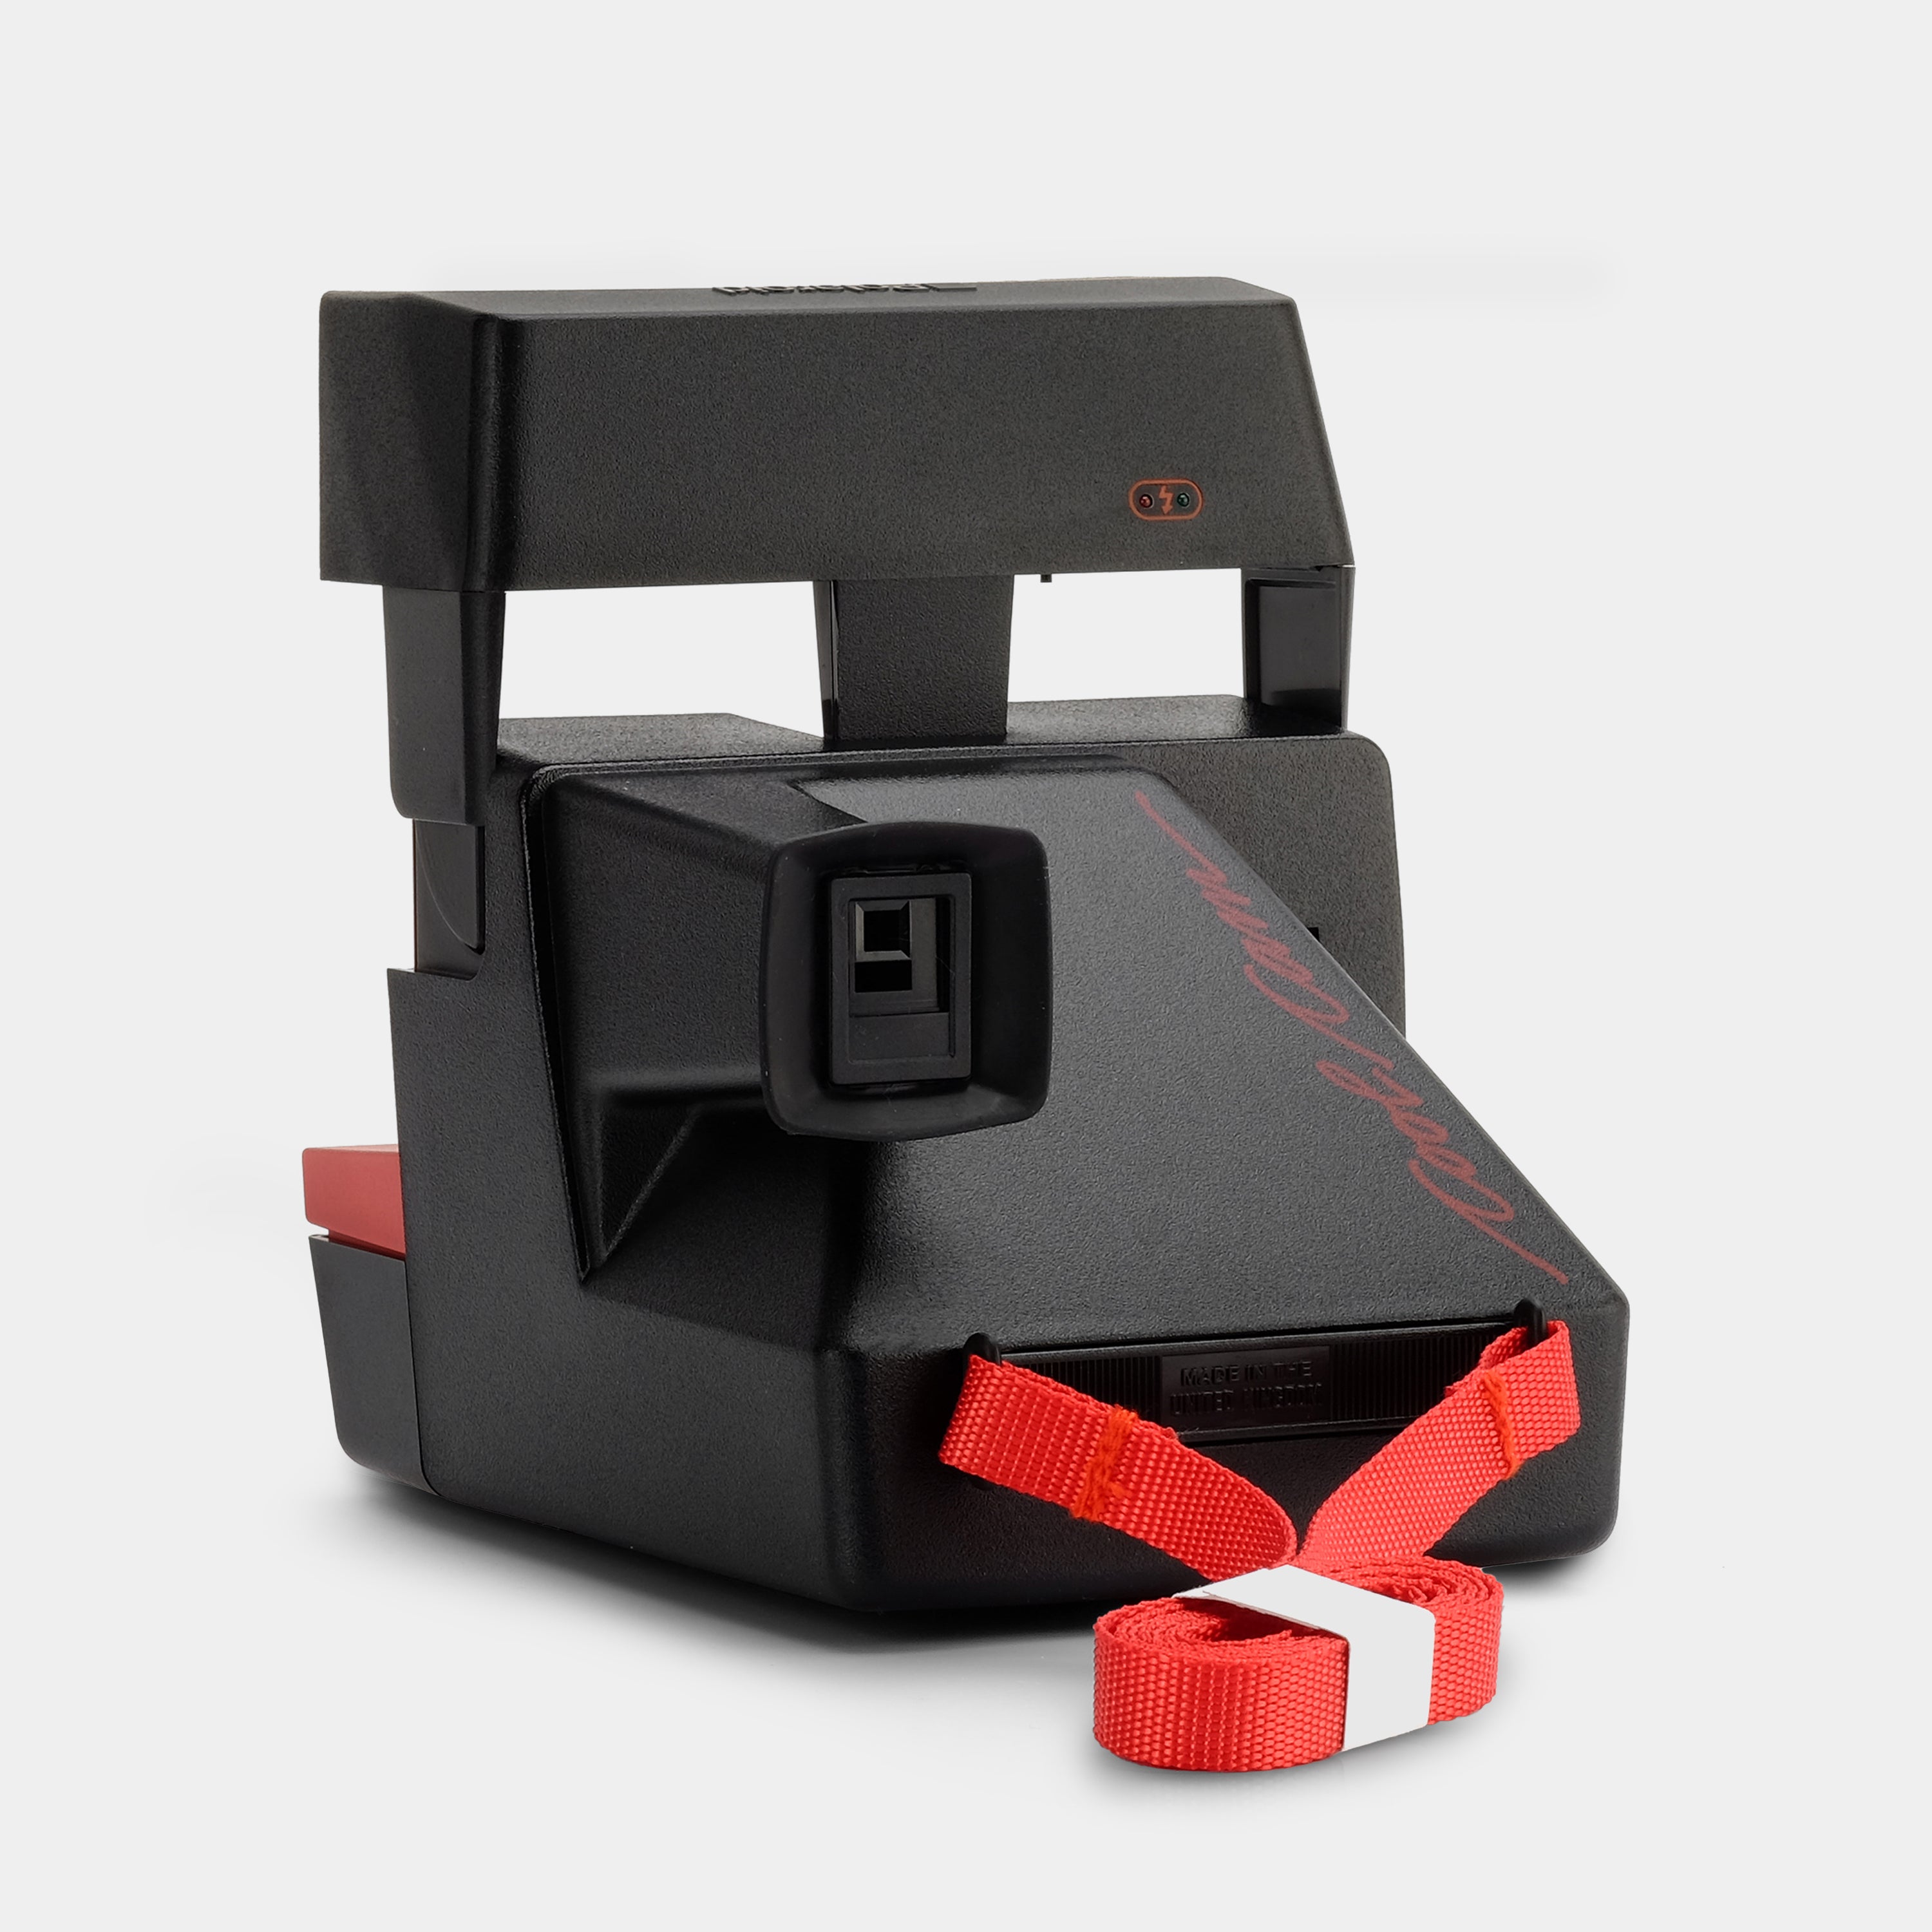 Polaroid 600 Cool Cam Red Instant Film Camera